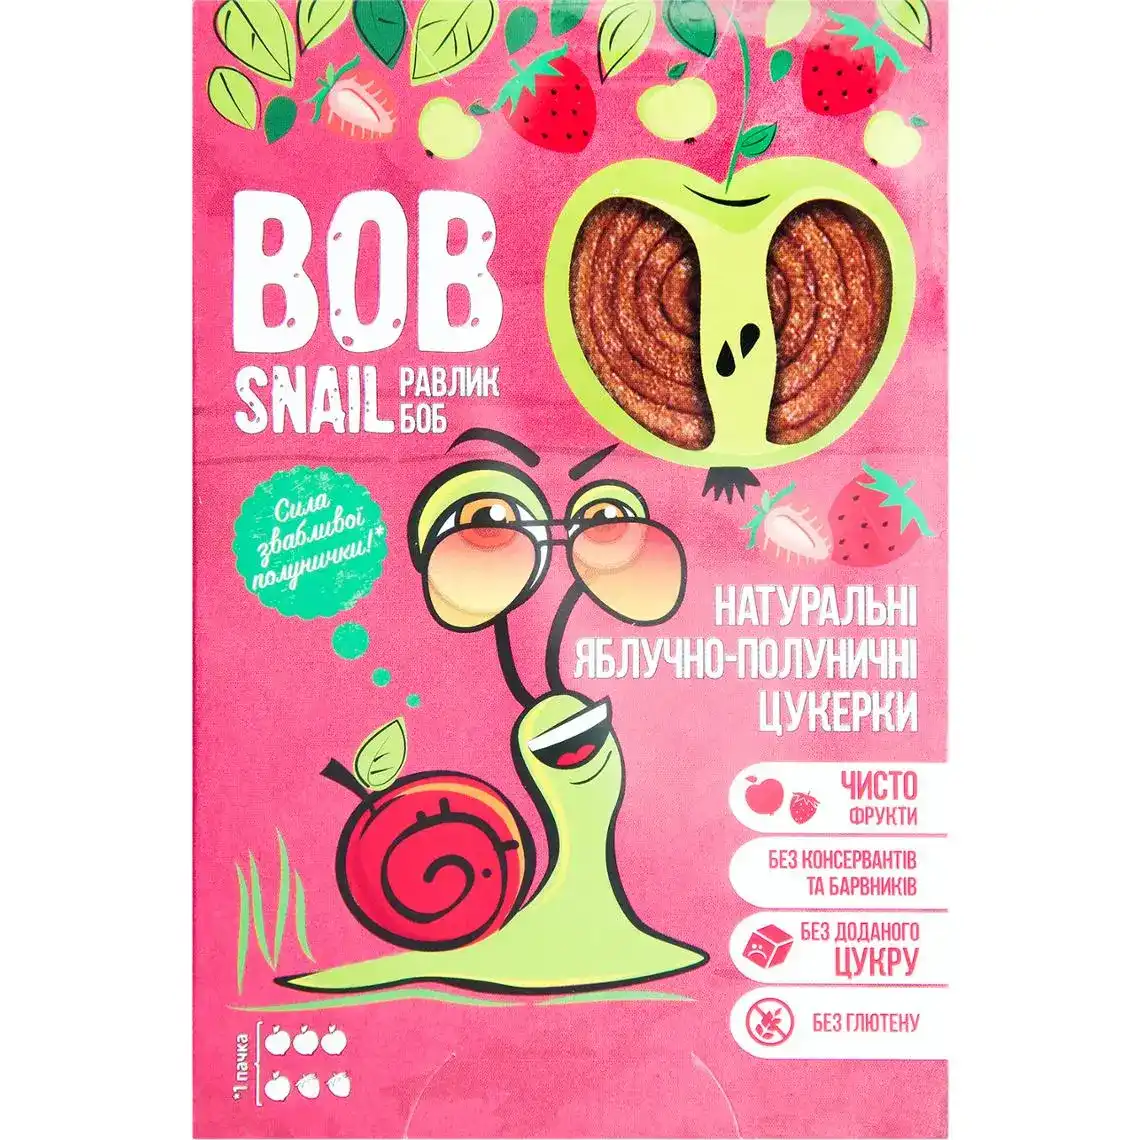 Фото 1 - Цукерки Bob Snail яблучно-полуничні натуральні 60 г